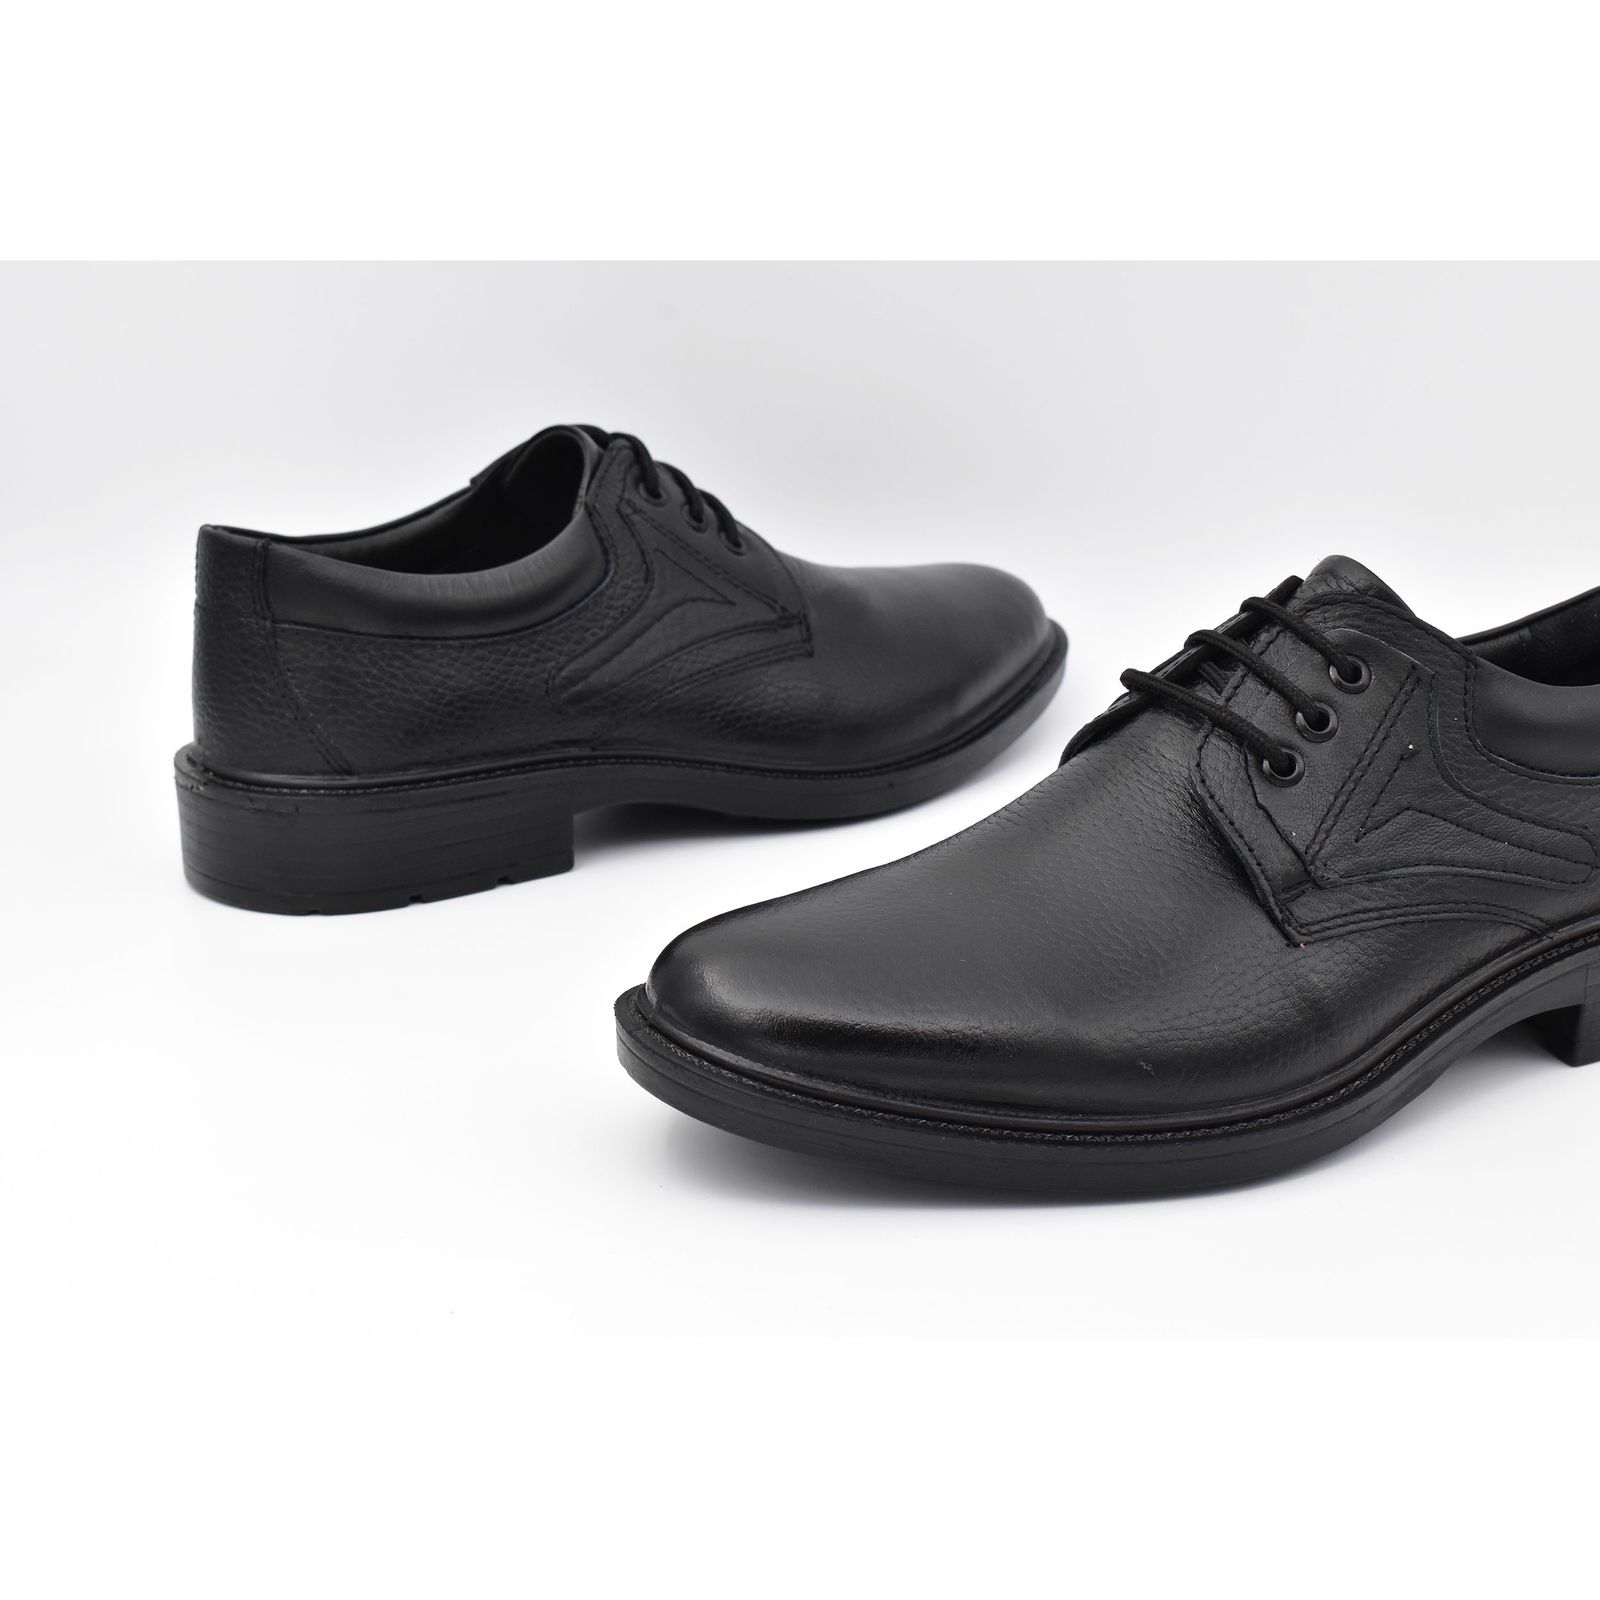 کفش مردانه پاما مدل Morano کد G1174 -  - 8